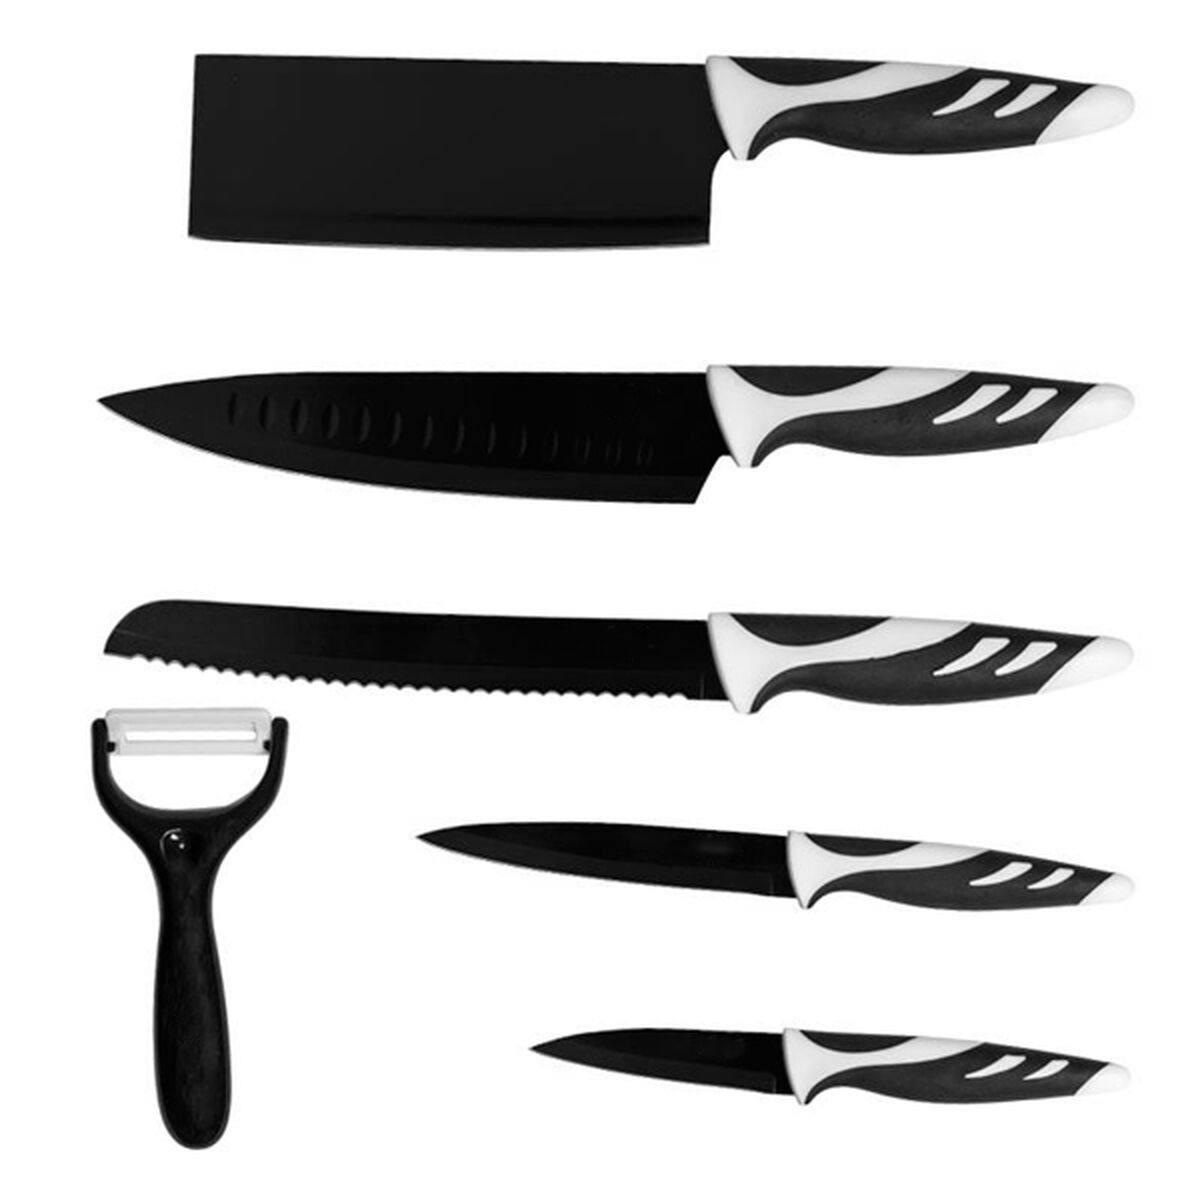 Knife Set Cecotec 01024 Black 6 Pieces